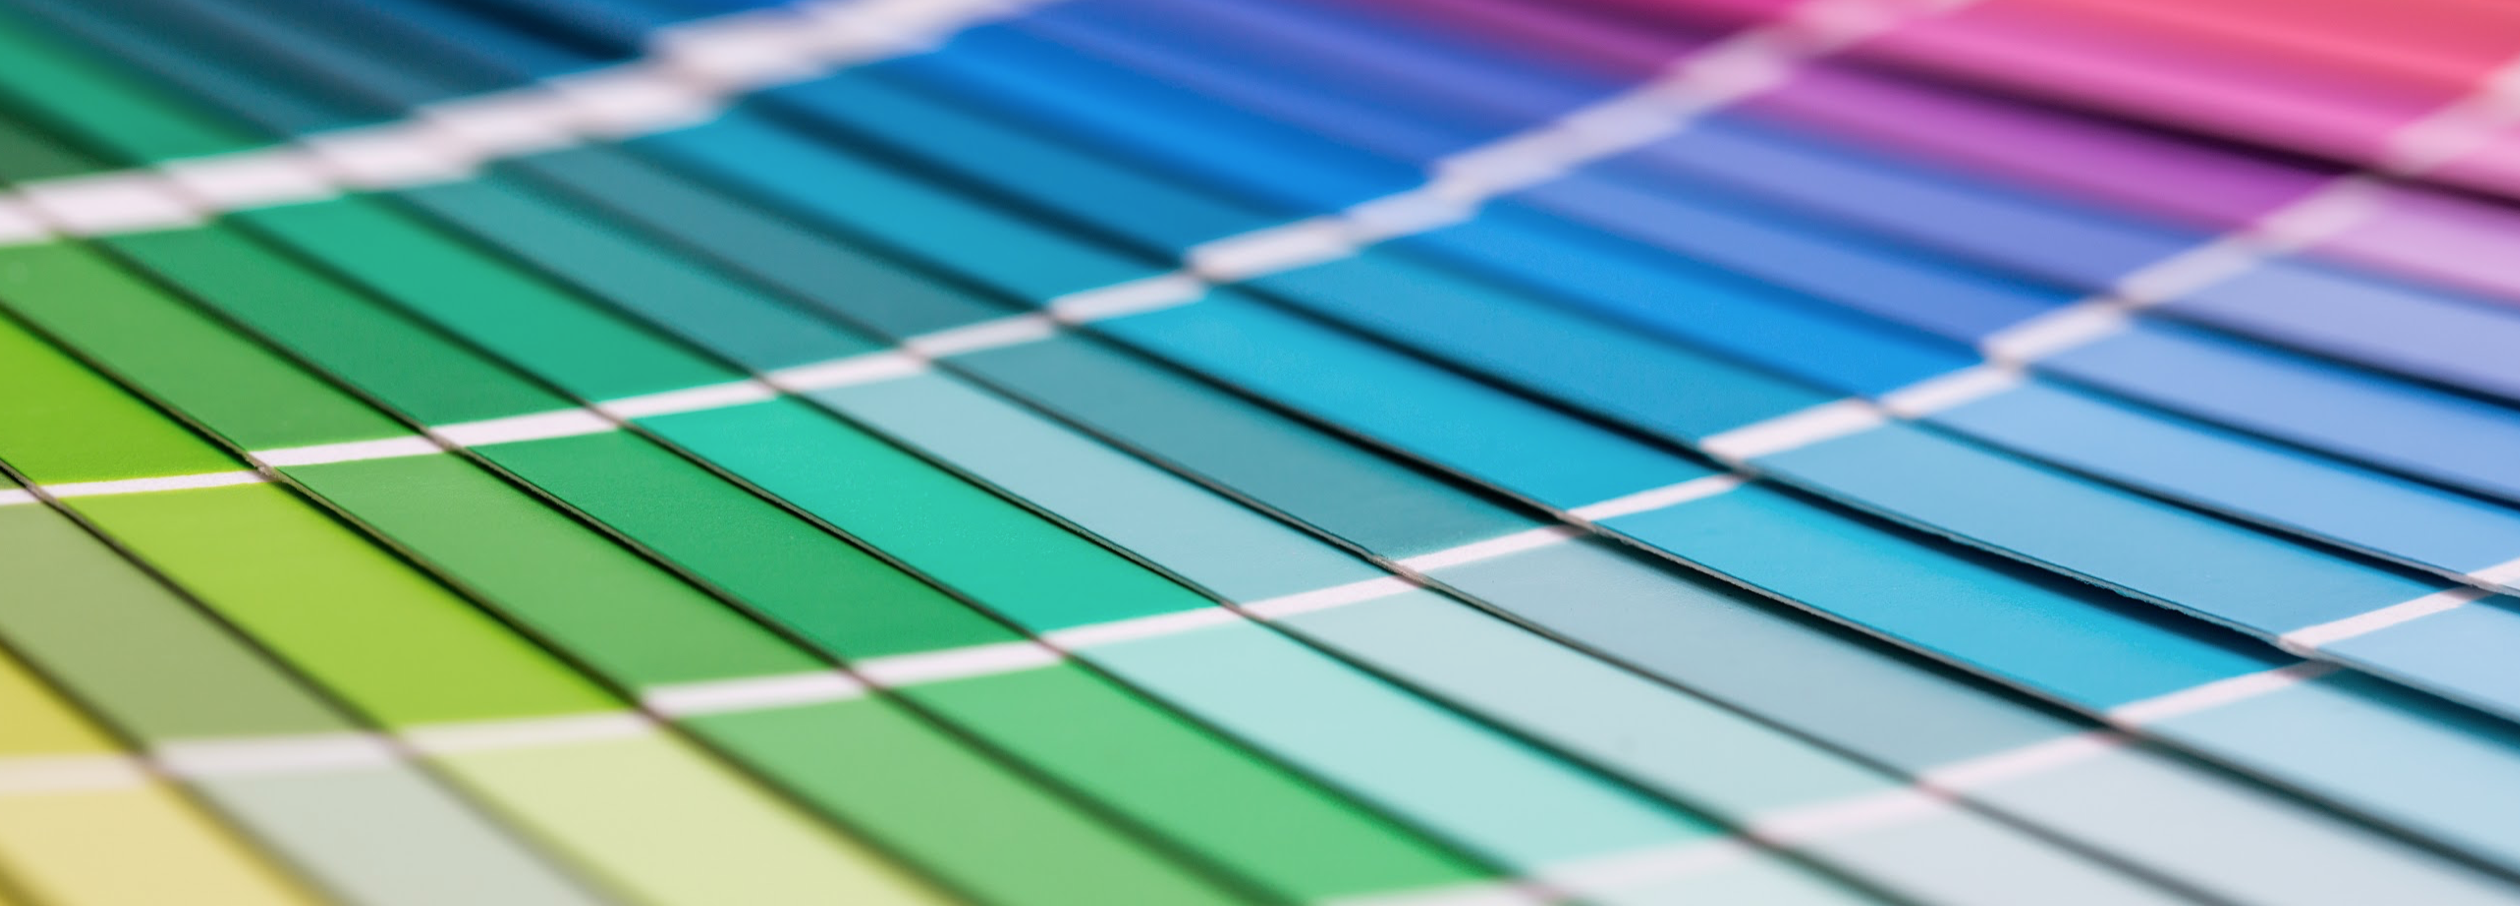 spectrum of colour samples